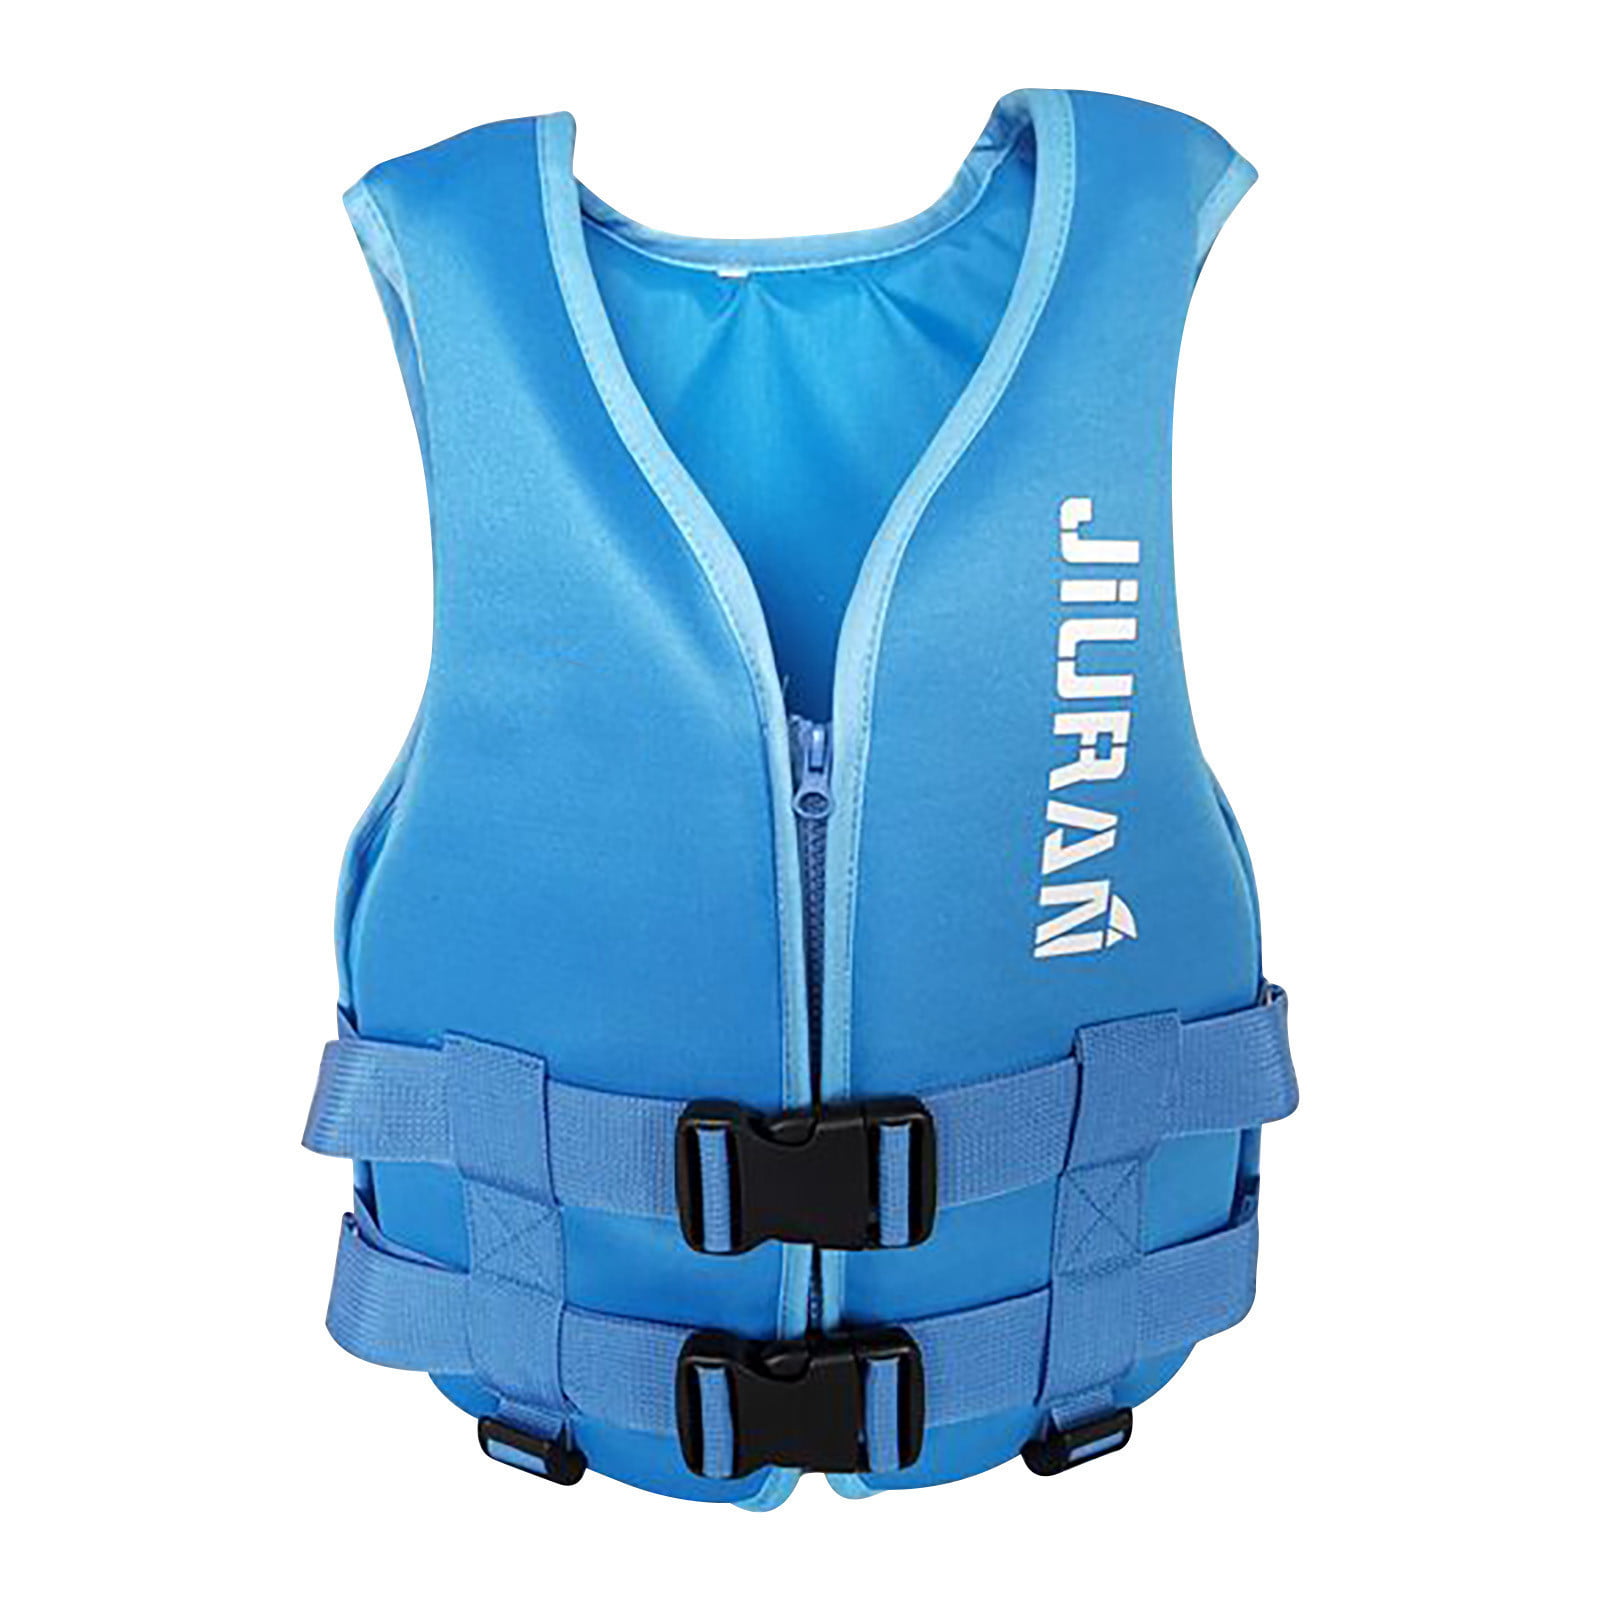 2018 Adult Life Jacket Drifting Swimming Boating Fishing Jetski Surf Life Vest 